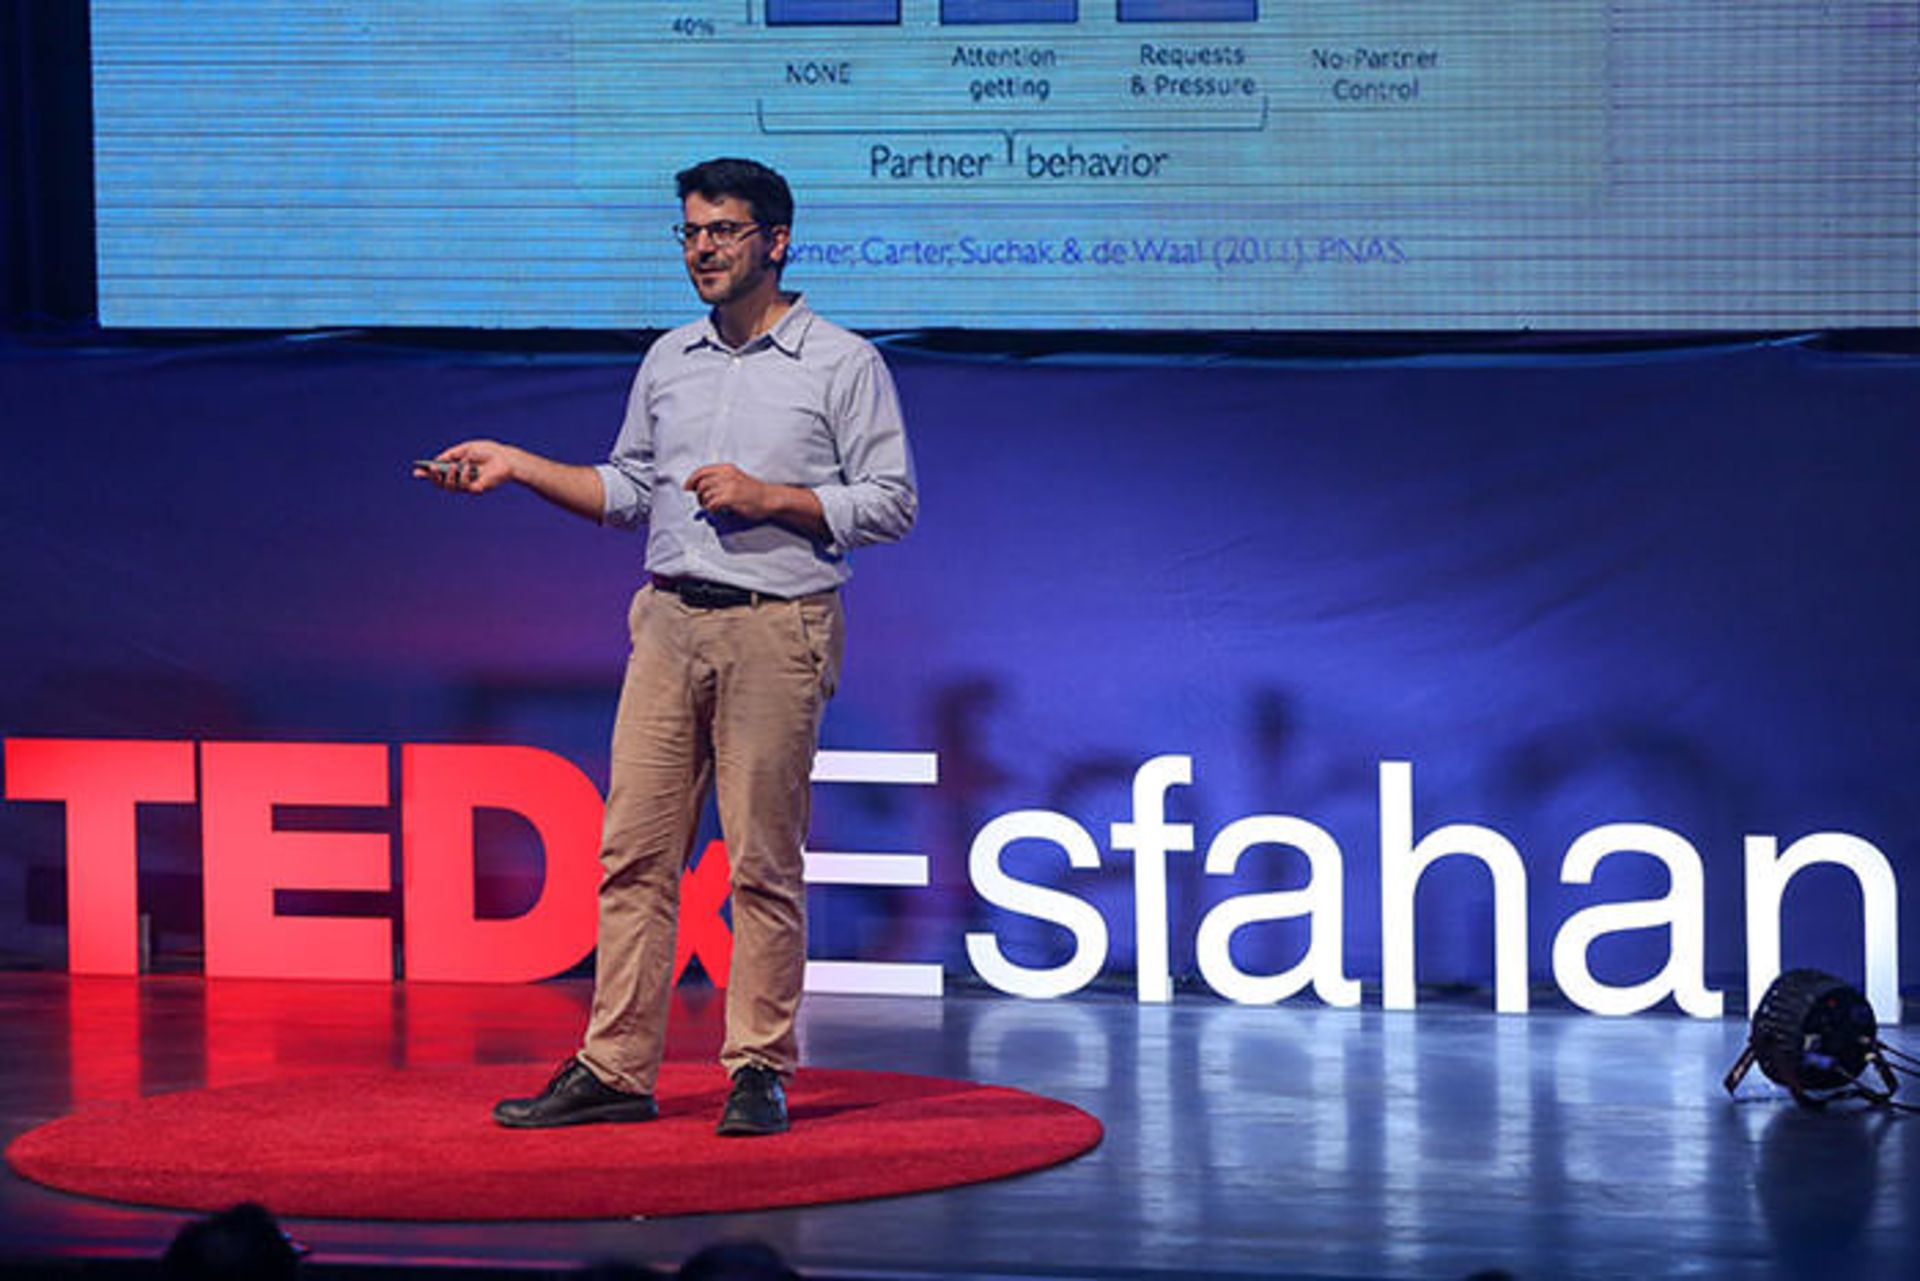 مرجع متخصصين ايران تدكس اصفهان / TEDx Esfahan